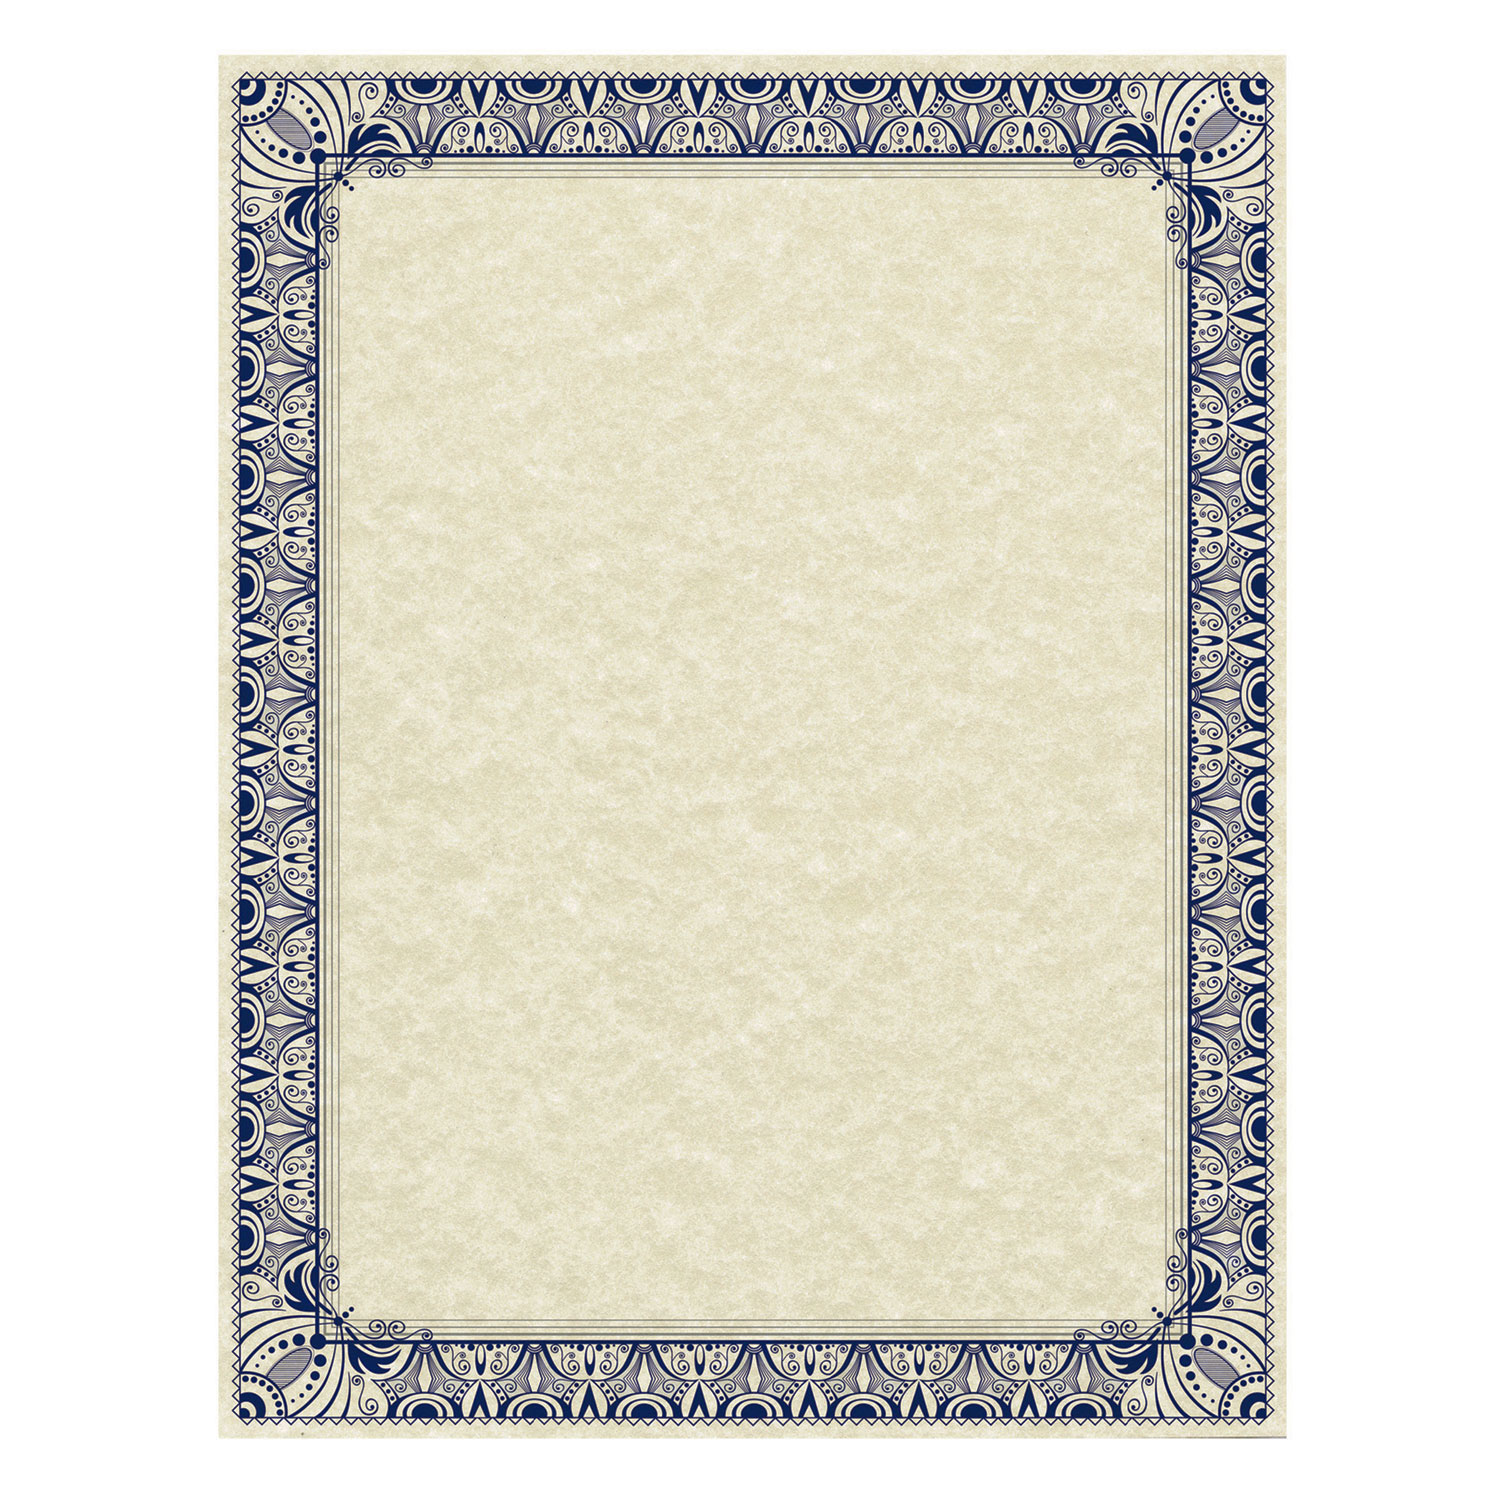 Southworth Parchment Certificates Retro 8 1/2 x 11 Ivory w/ Blue